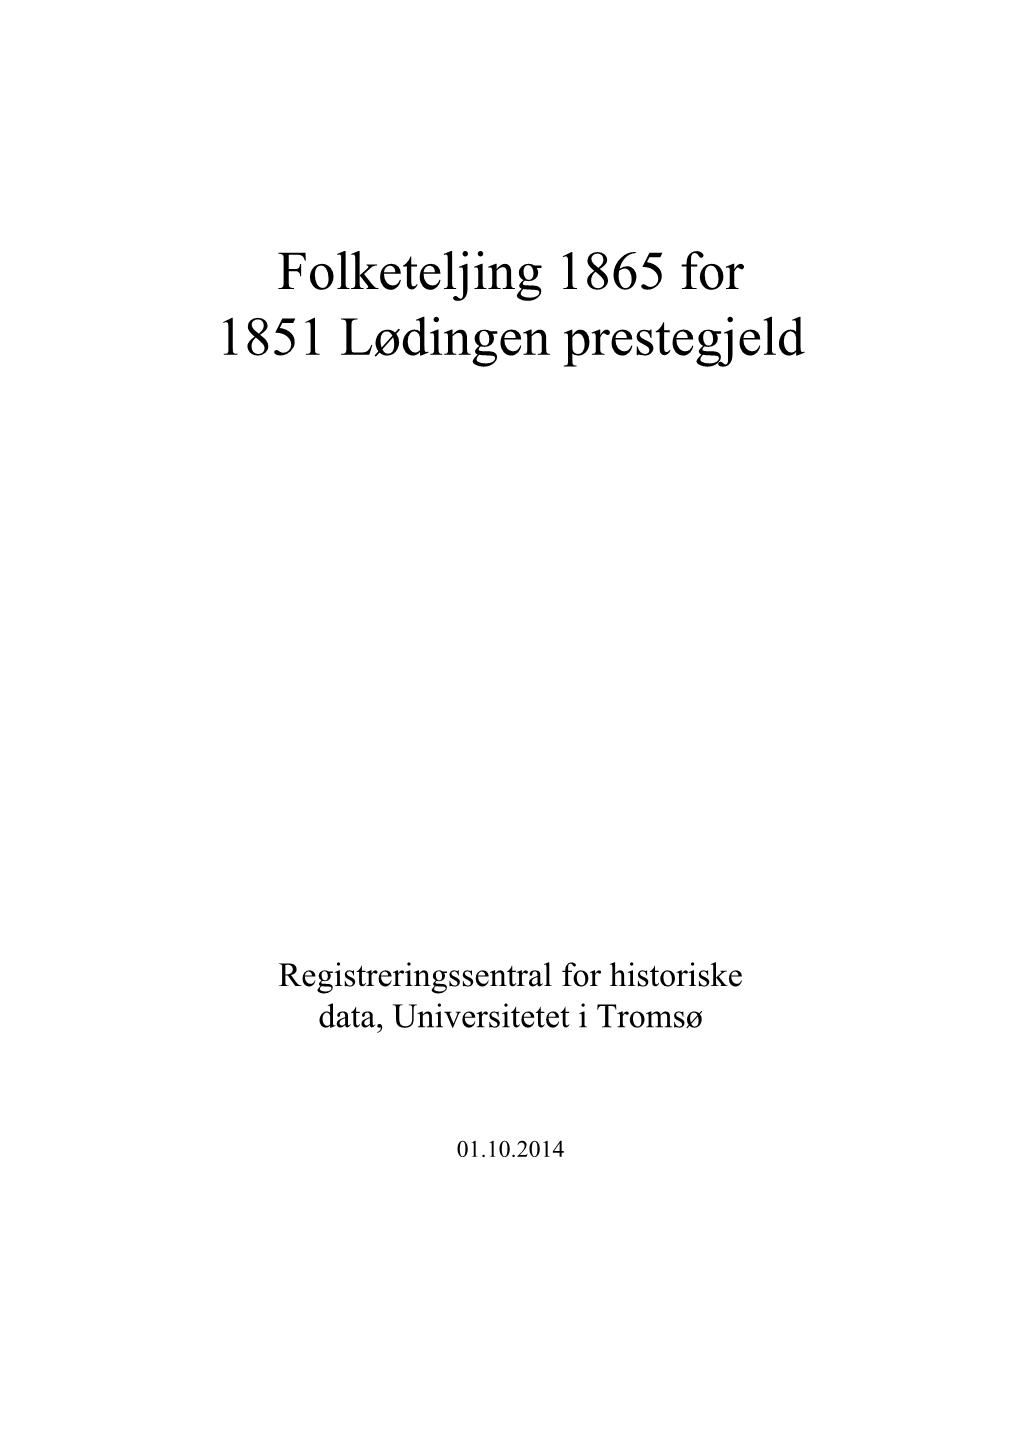 Folketeljing 1865 for 1851 Lødingen Prestegjeld